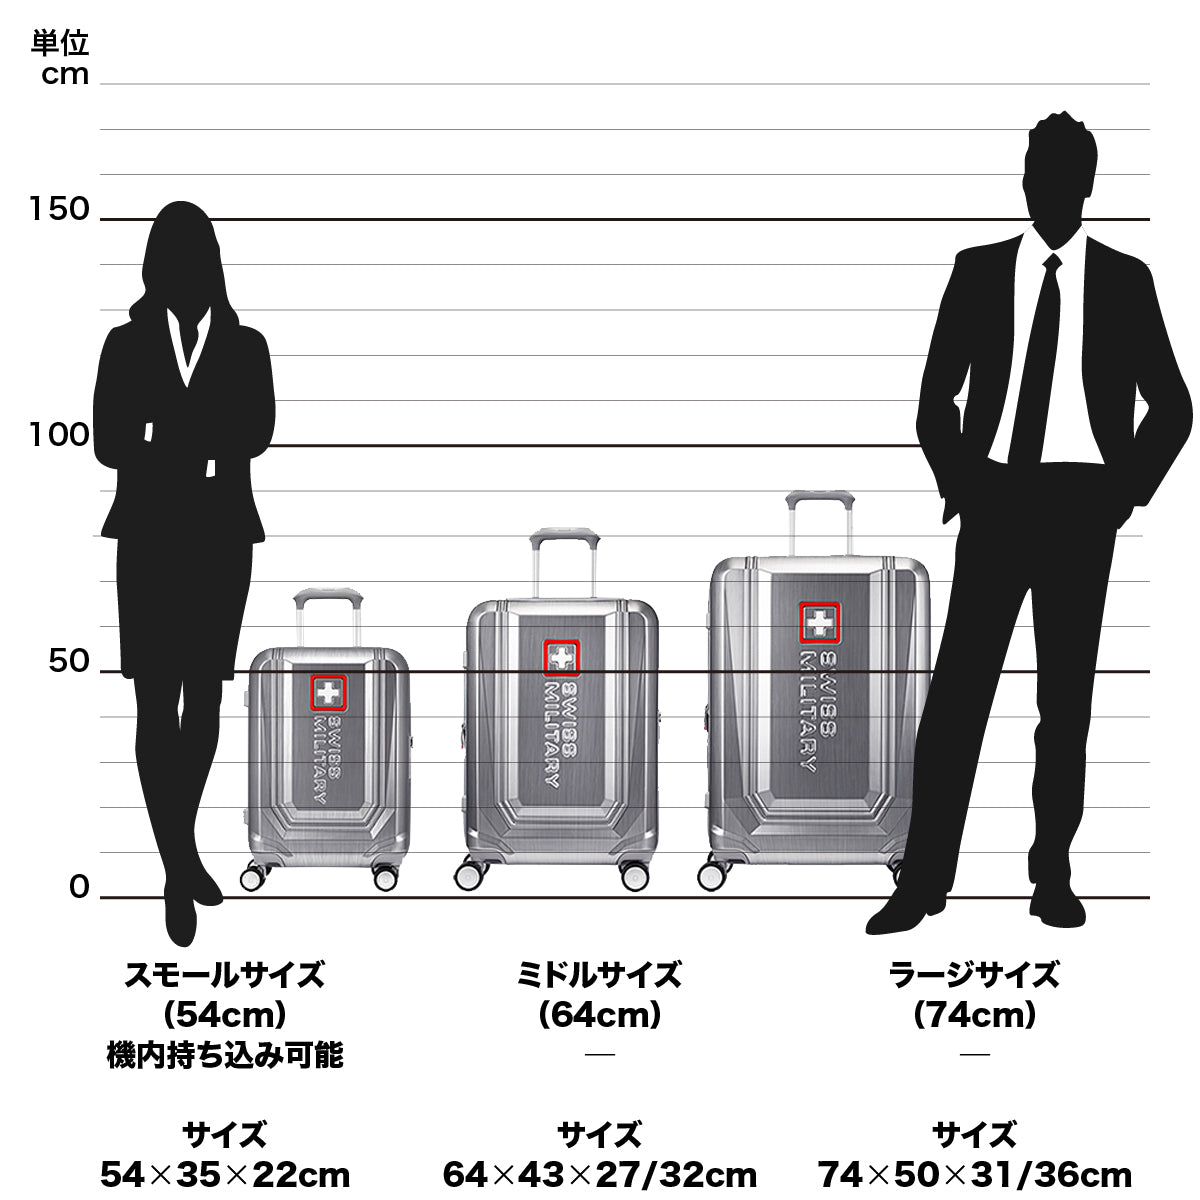 スーツケース 大型 Lサイズ 一週間以上 74cm BROQUEL(ブロッケル) チタングレー